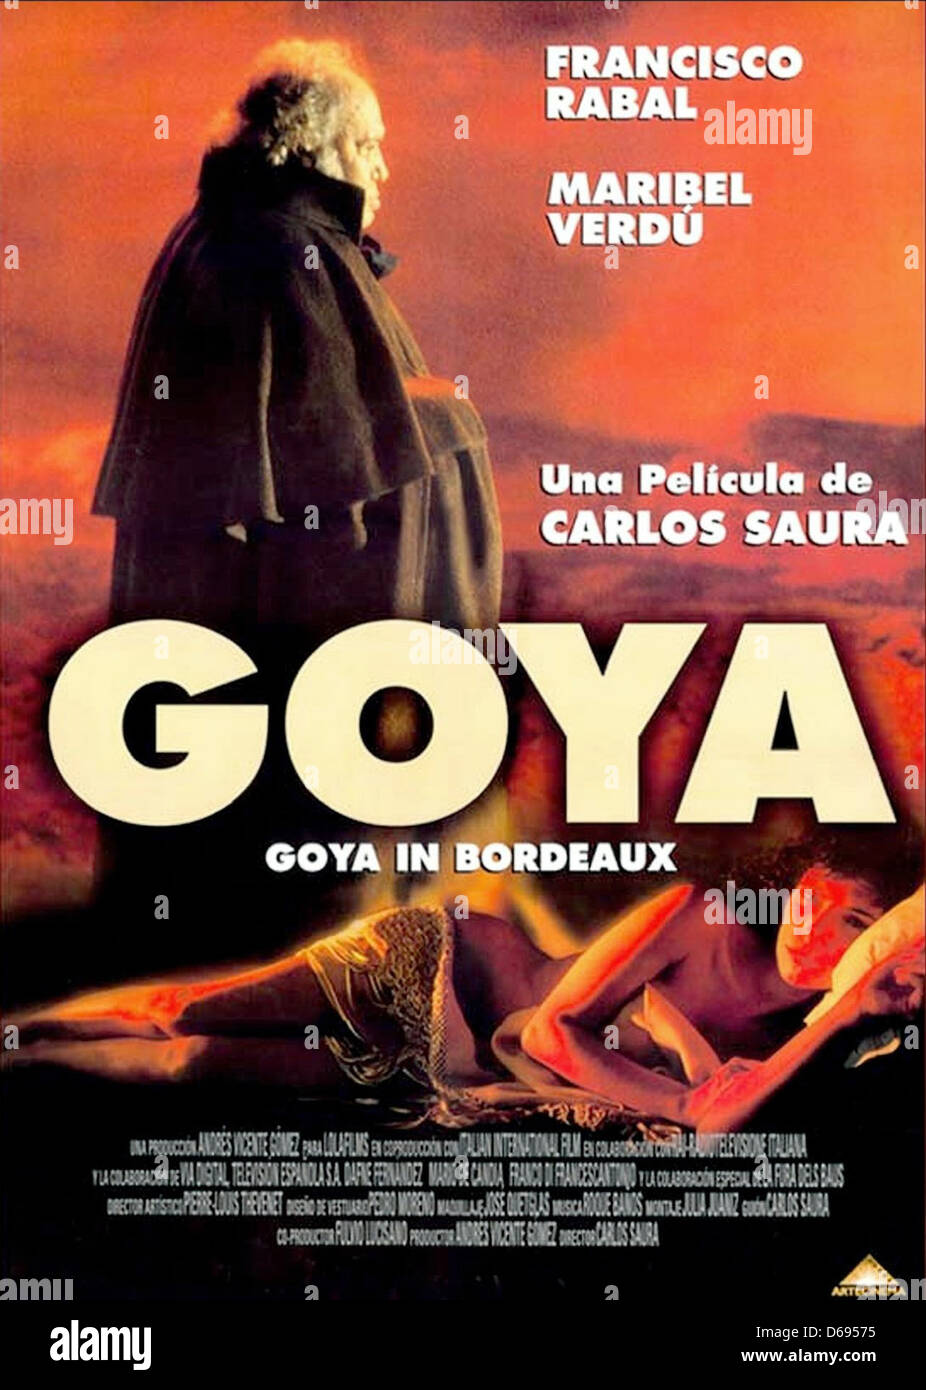 Résultat de recherche d'images pour "goya film 1999"